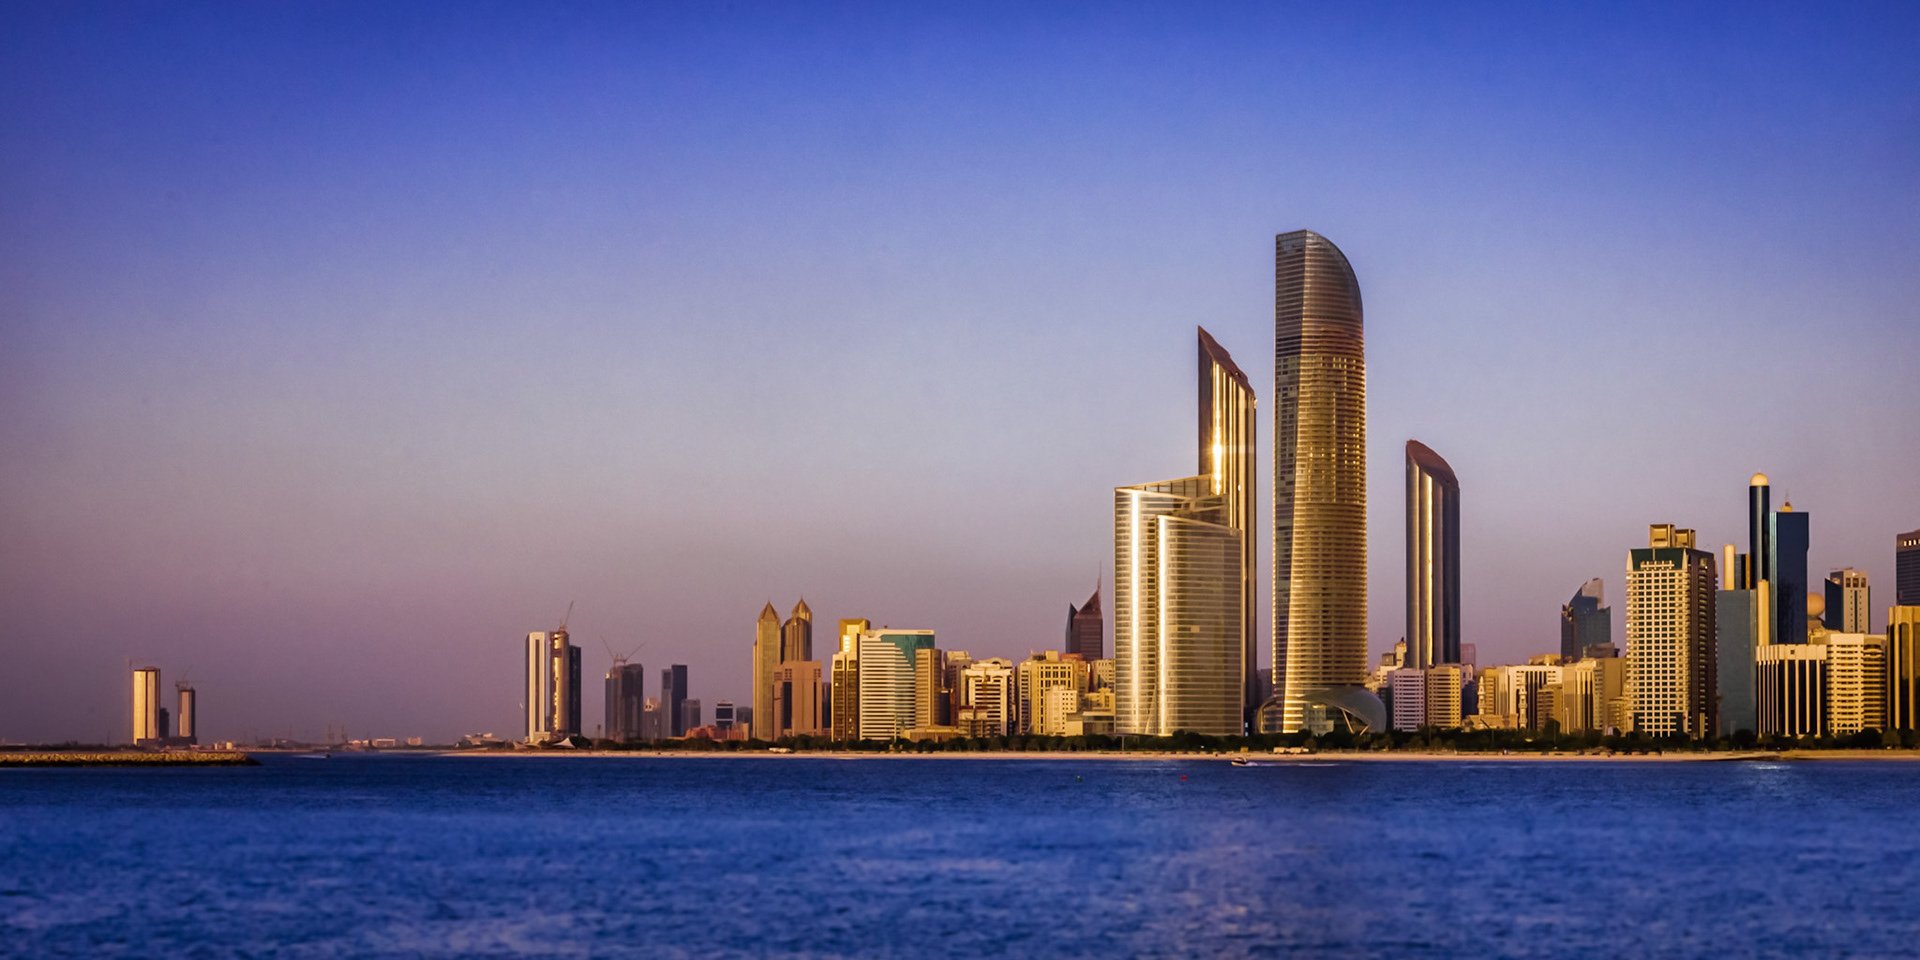 Корниш набережная абу. Набережная Корниш в Абу-Даби. Столица ОАЭ Абу-Даби. Corniche набережная Abu Dhabi. Панорама набережная Корниш в Абу-Даби.